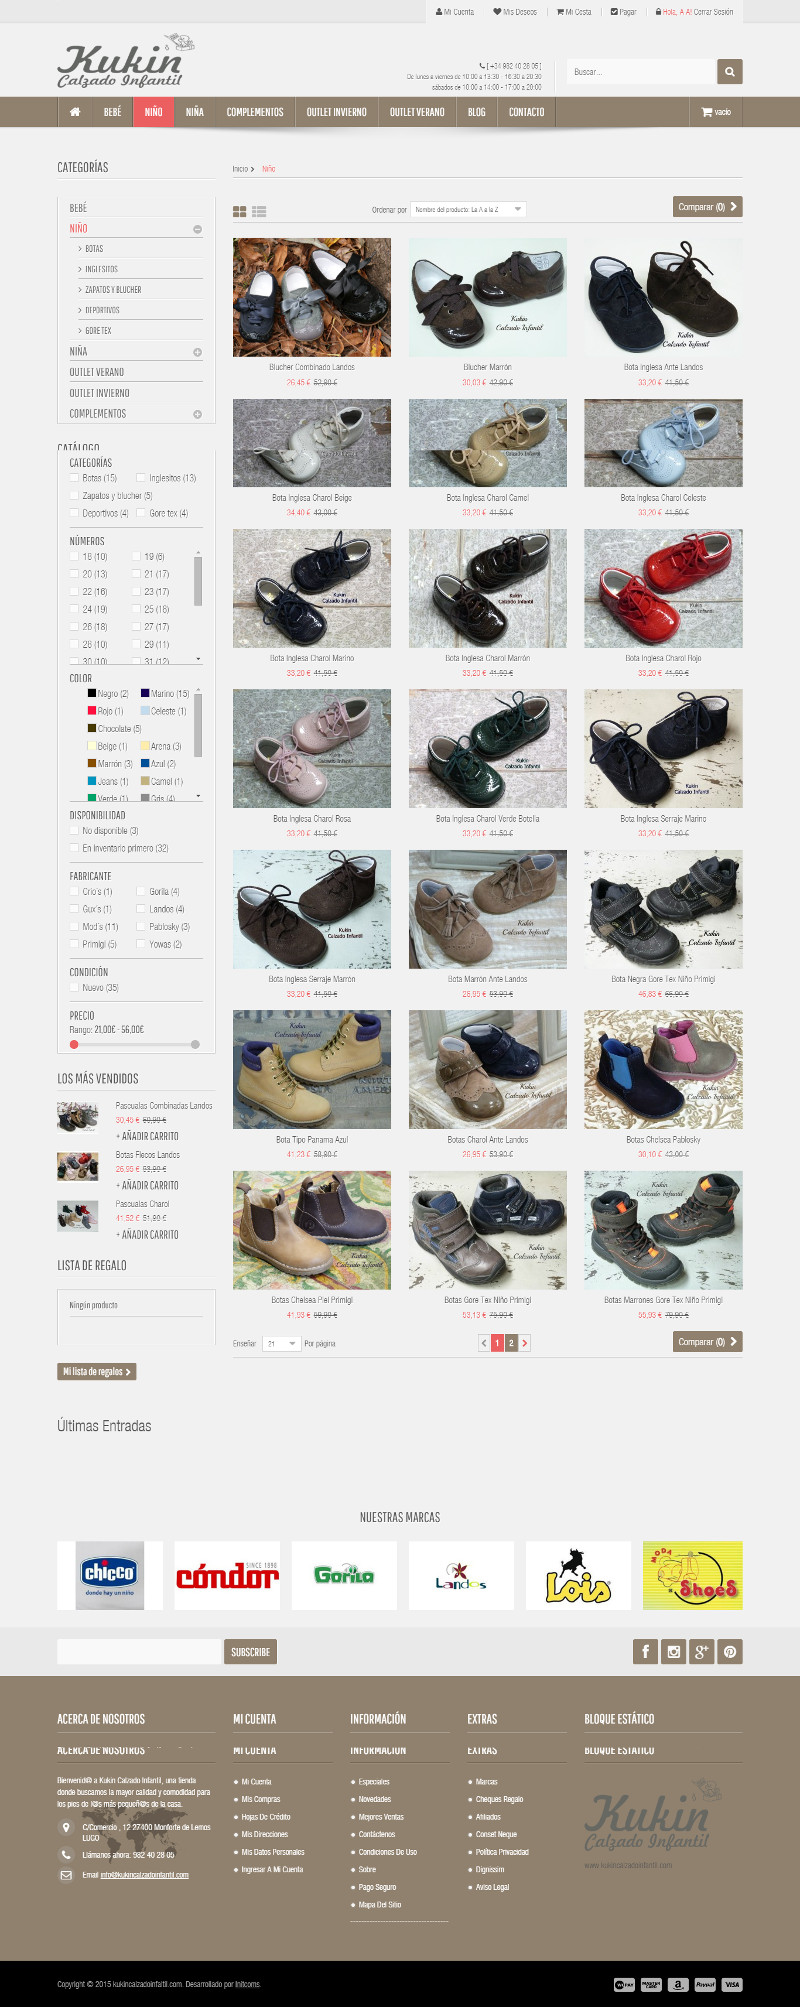 Tiendas online hechas con Prestashop - kukin calzado infantil2